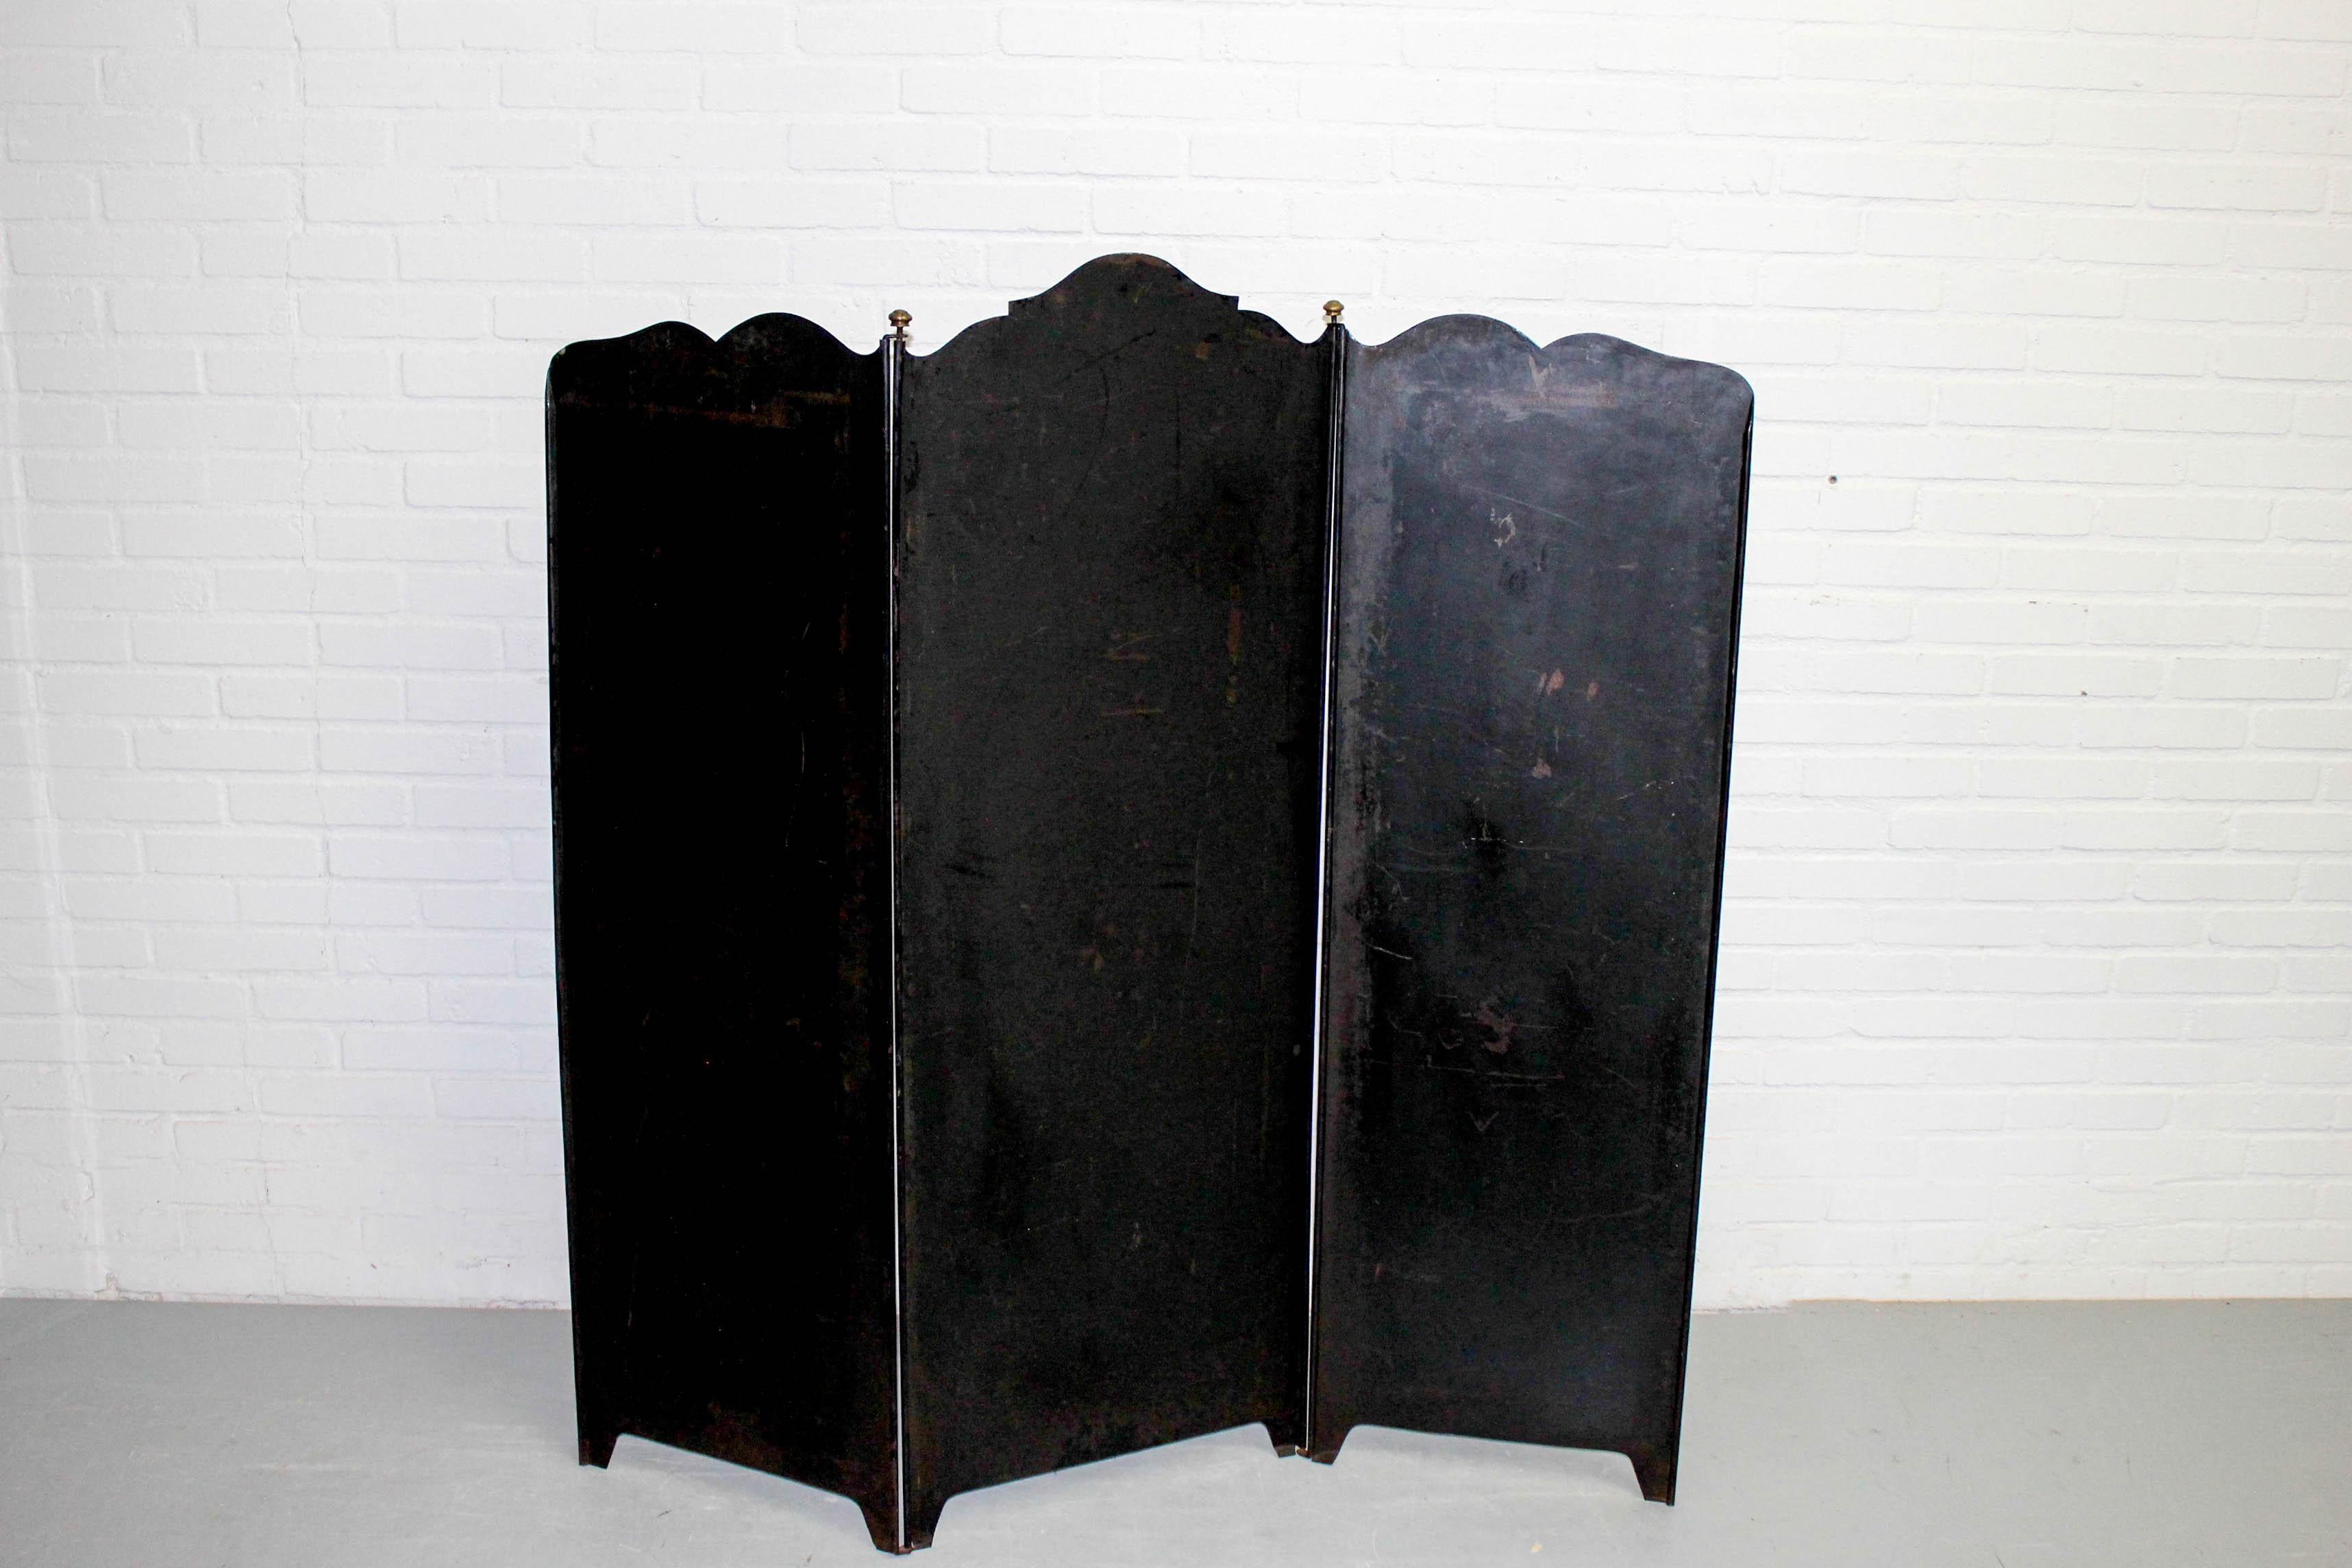 Art Deco 3-Panel Folding Screen or Room Divider Black Metal Brass Details, Franc 1